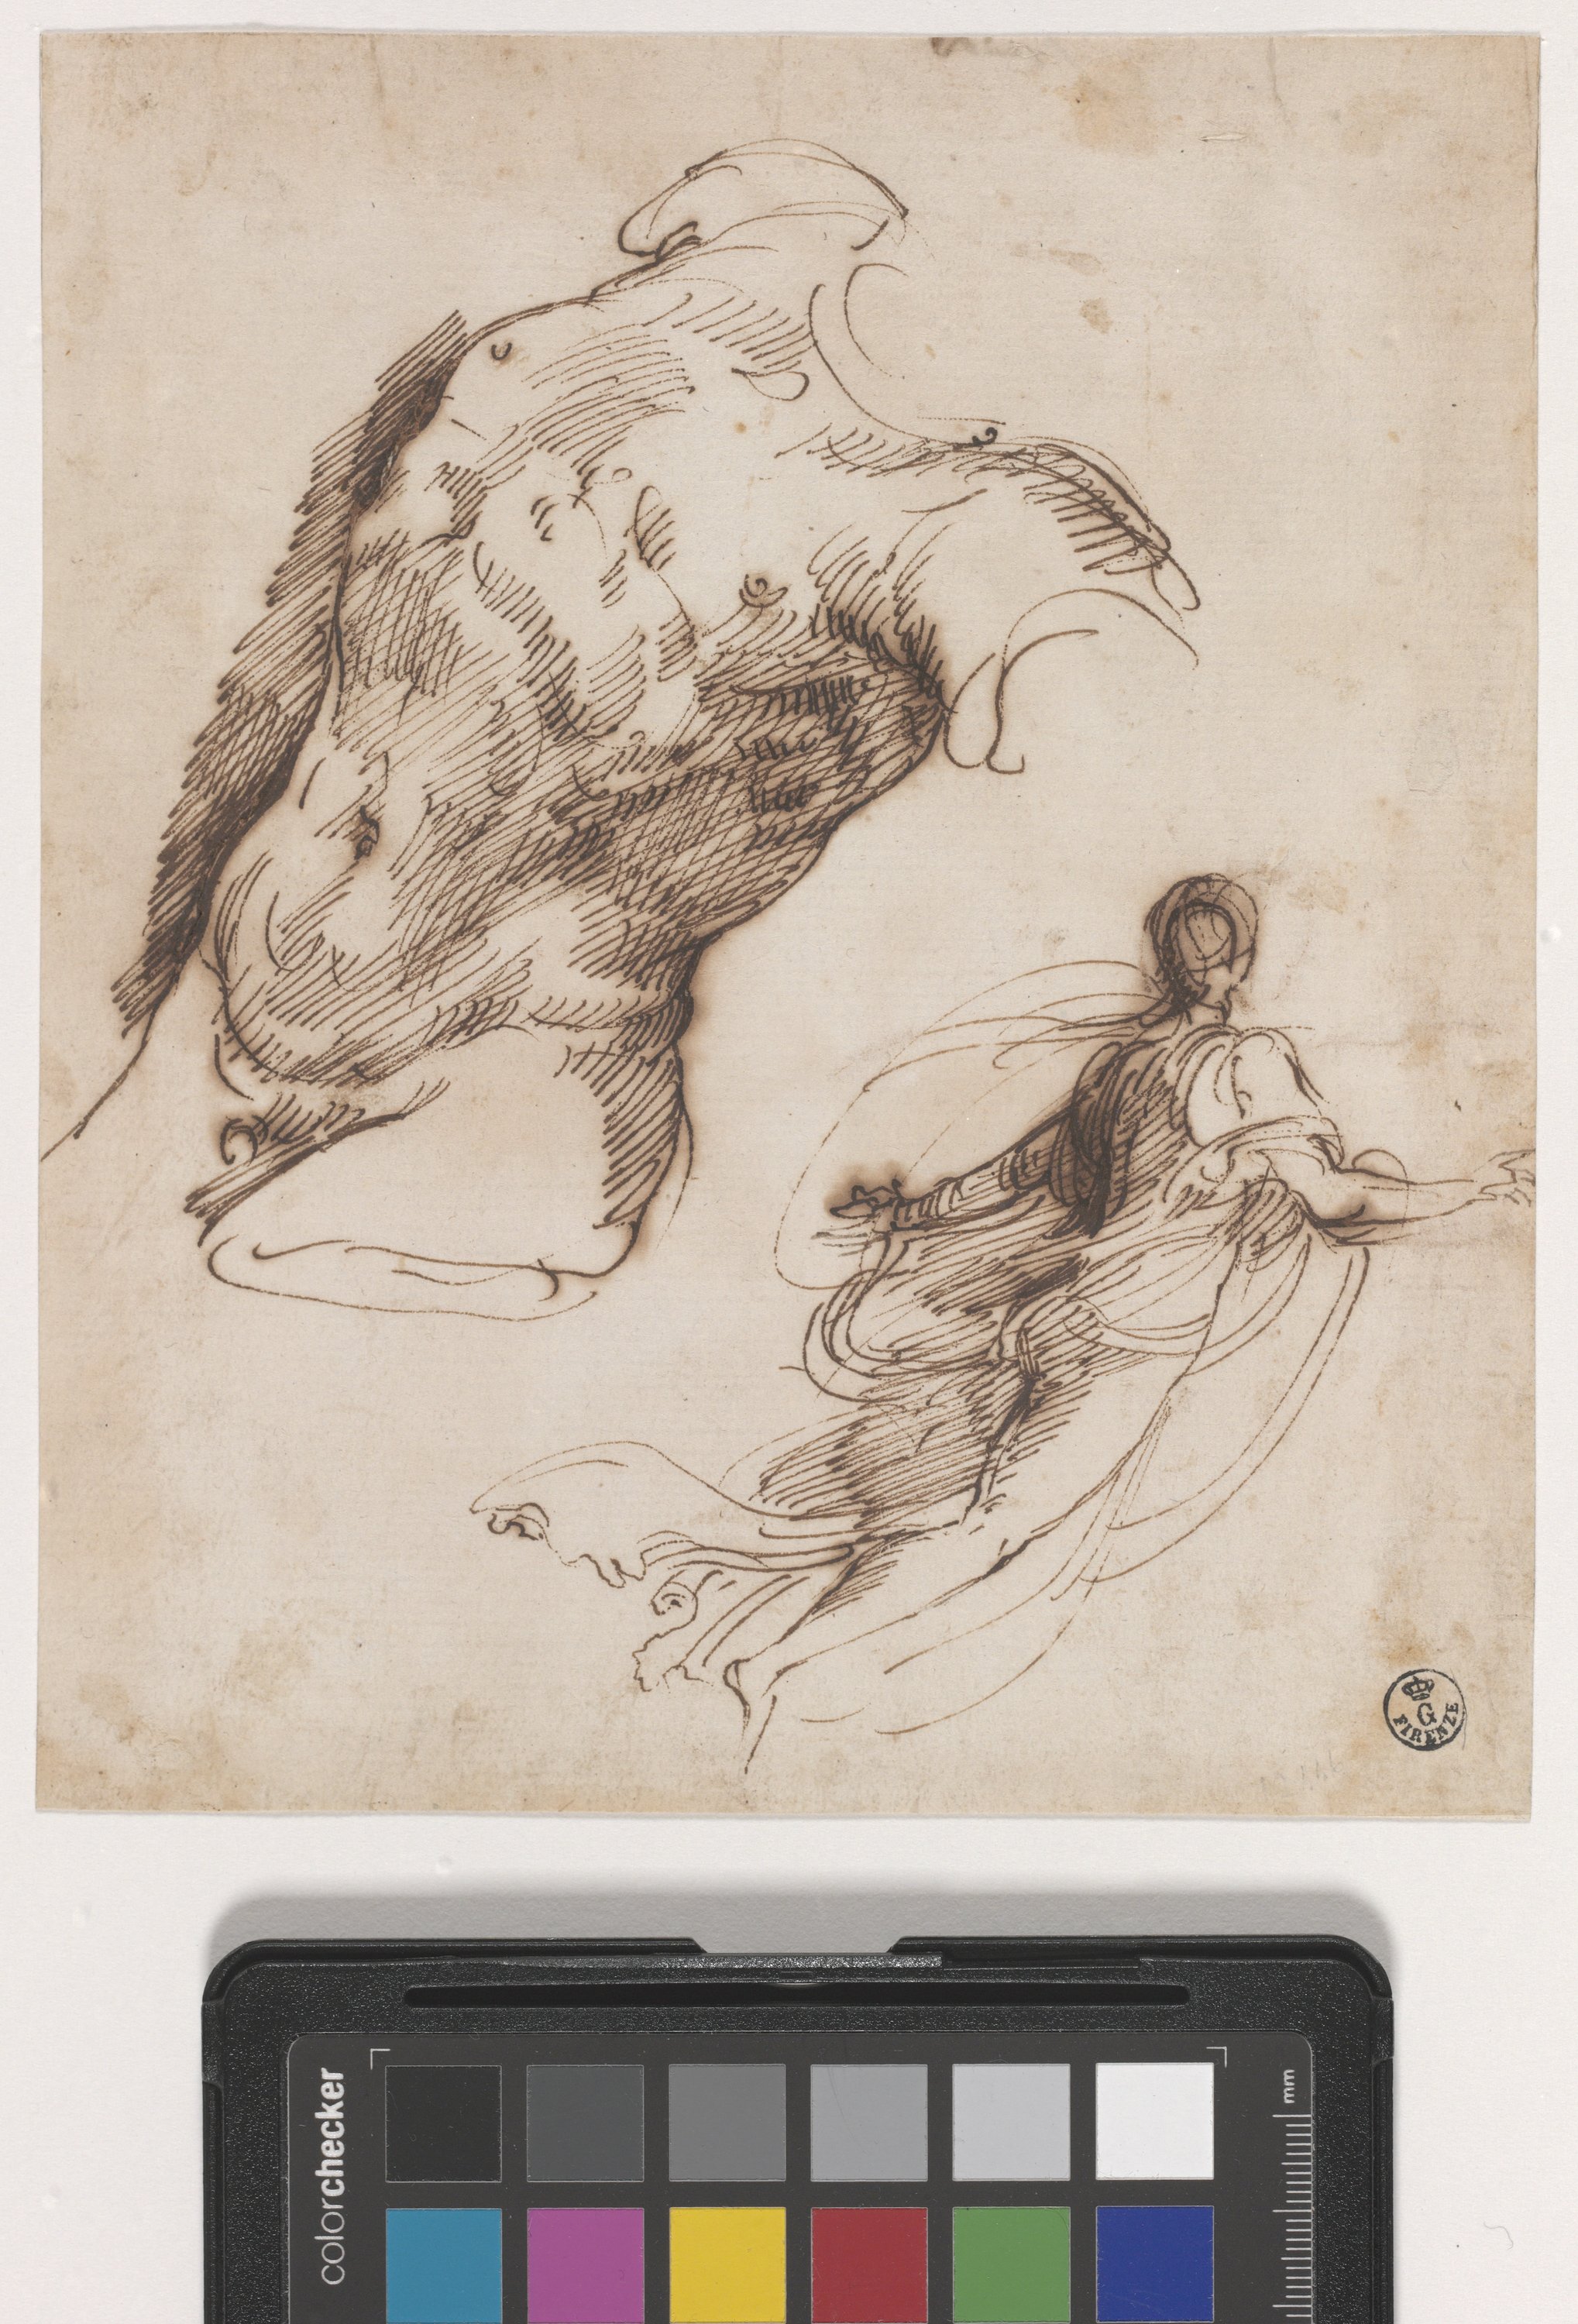 Torso maschile nudo volto a sinistra, figura femminile di spalle (disegno) di Reni Guido (primo quarto XVII)